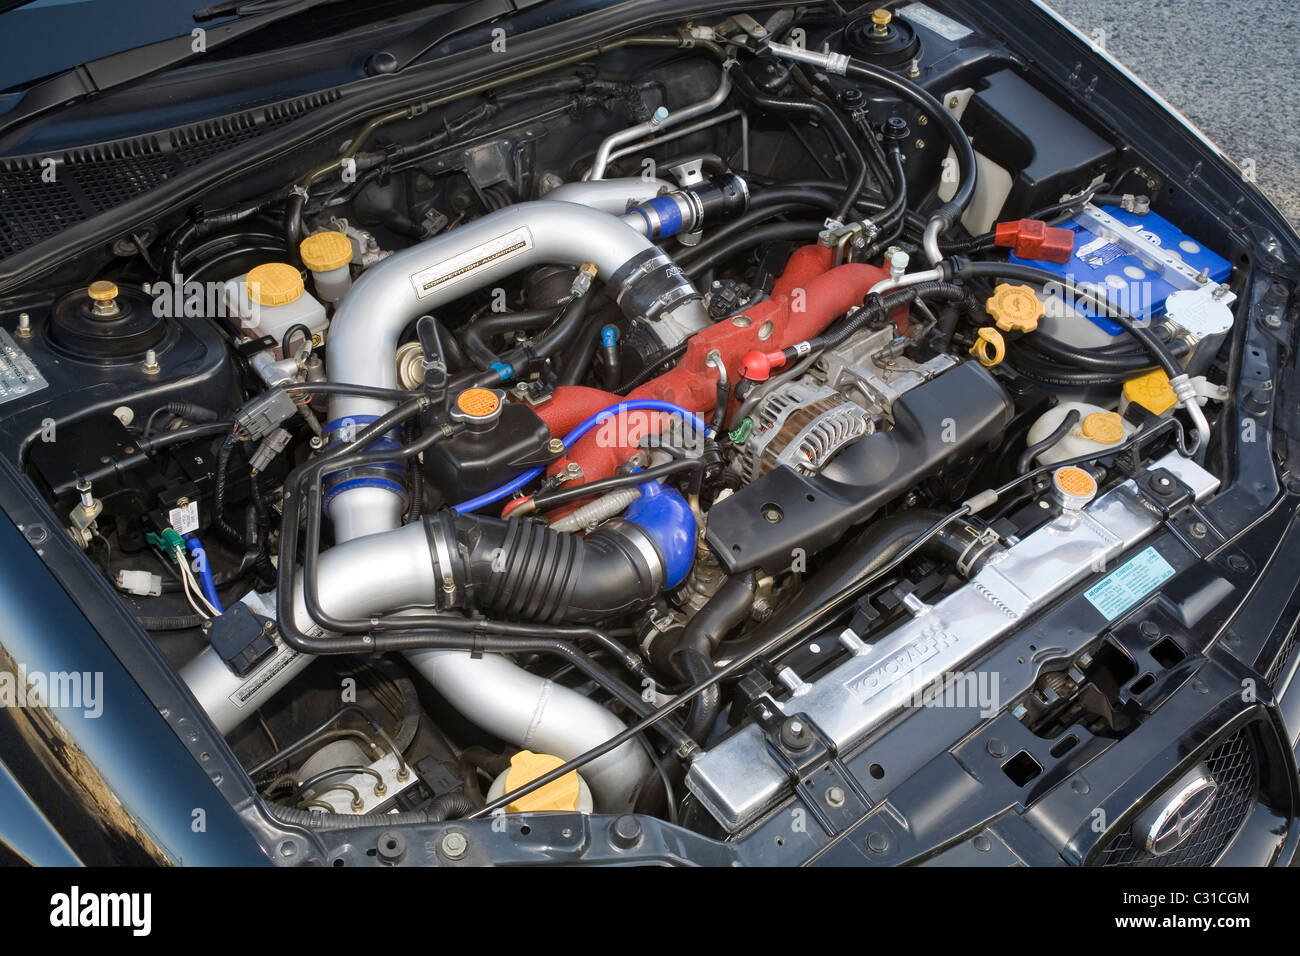 Subaru WRX Imprezza giapponese auto sportive motore sovralimentato. Foto Stock